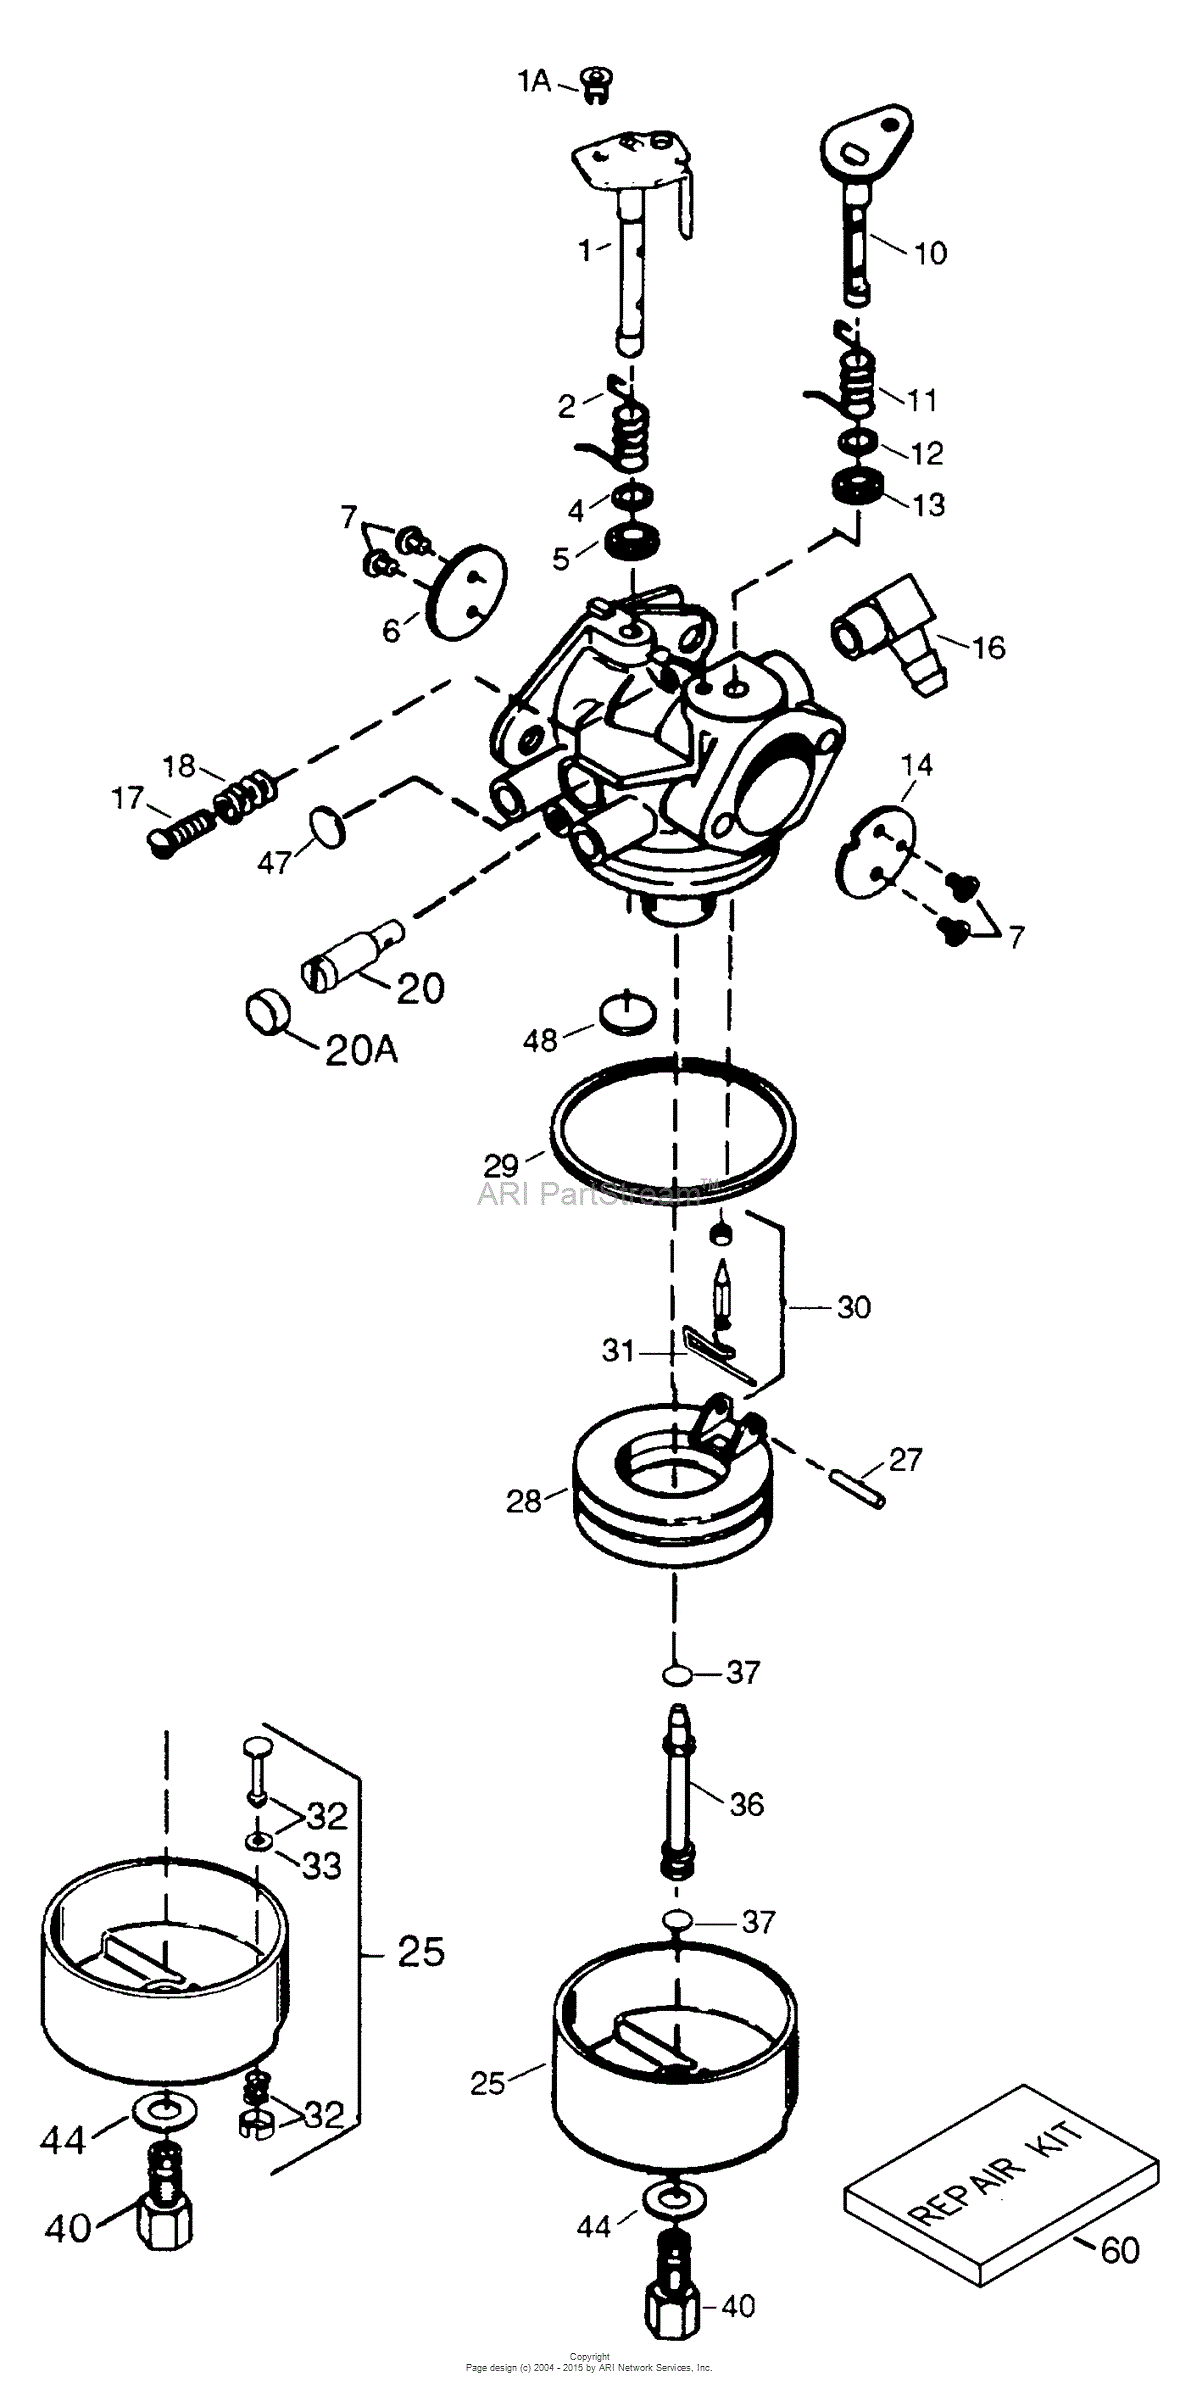 Tech Gear Kohler 20 Hp Carburetor Diagram